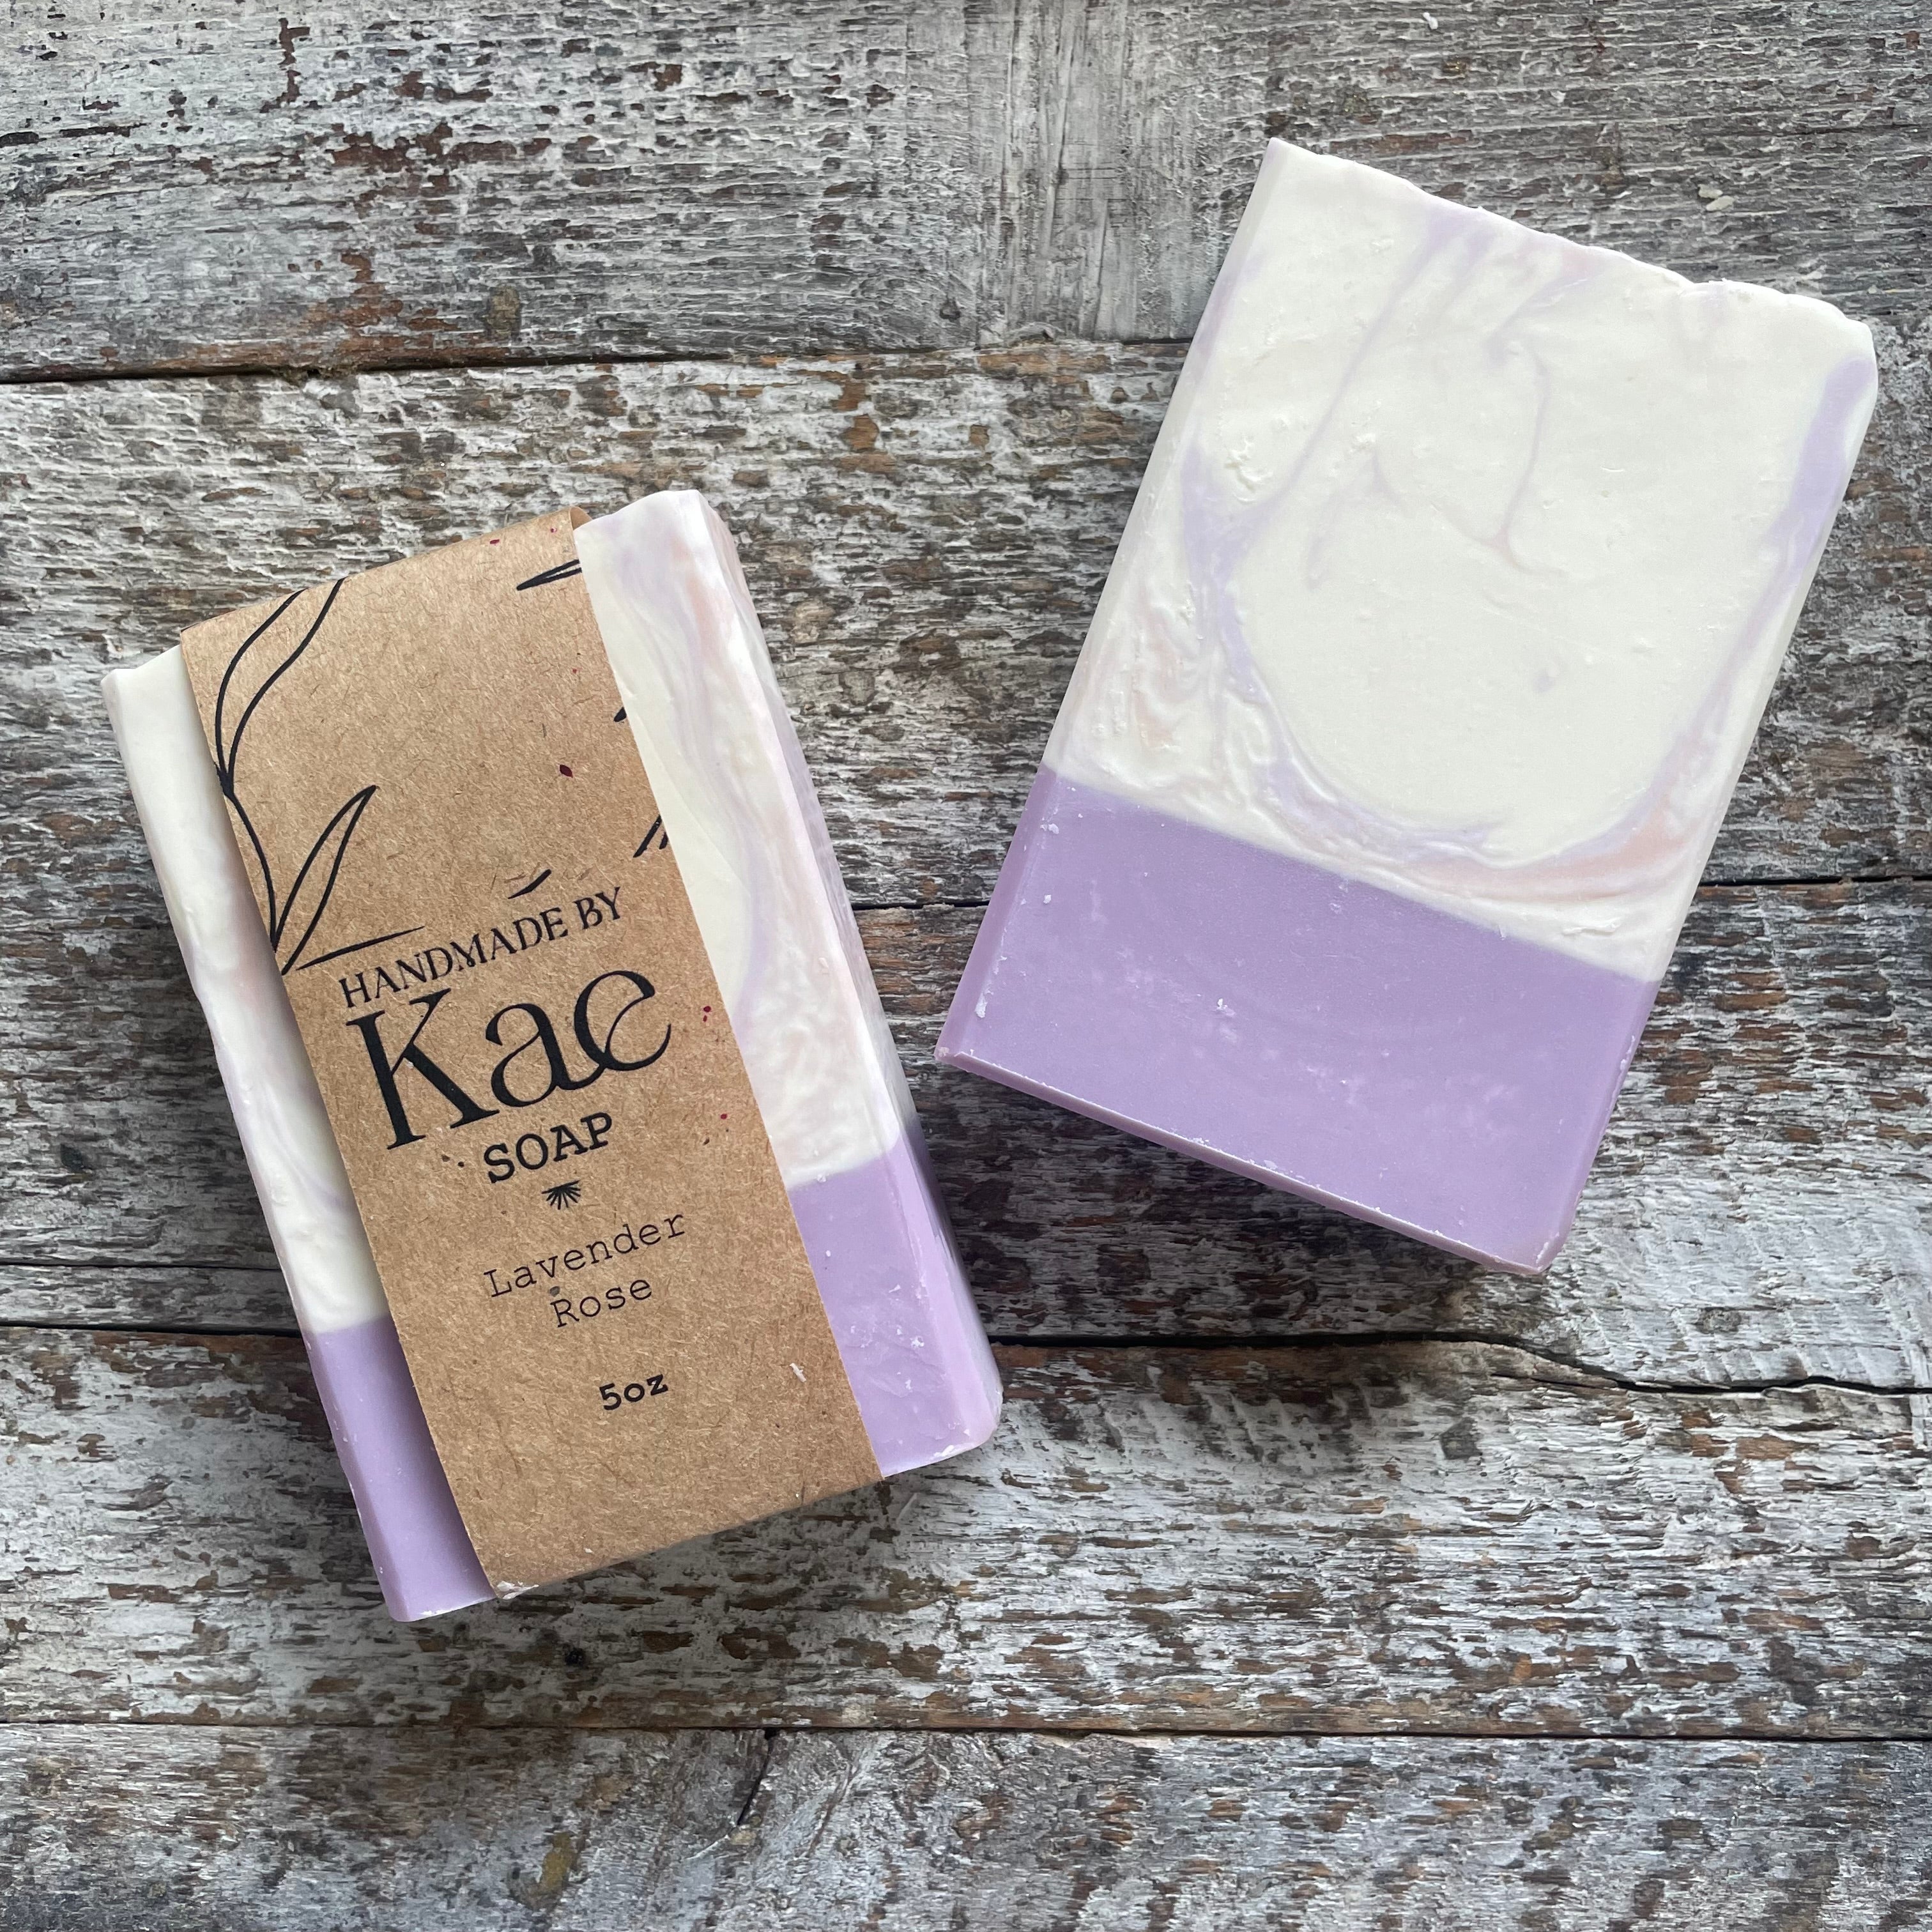 Lavender Rose Soap